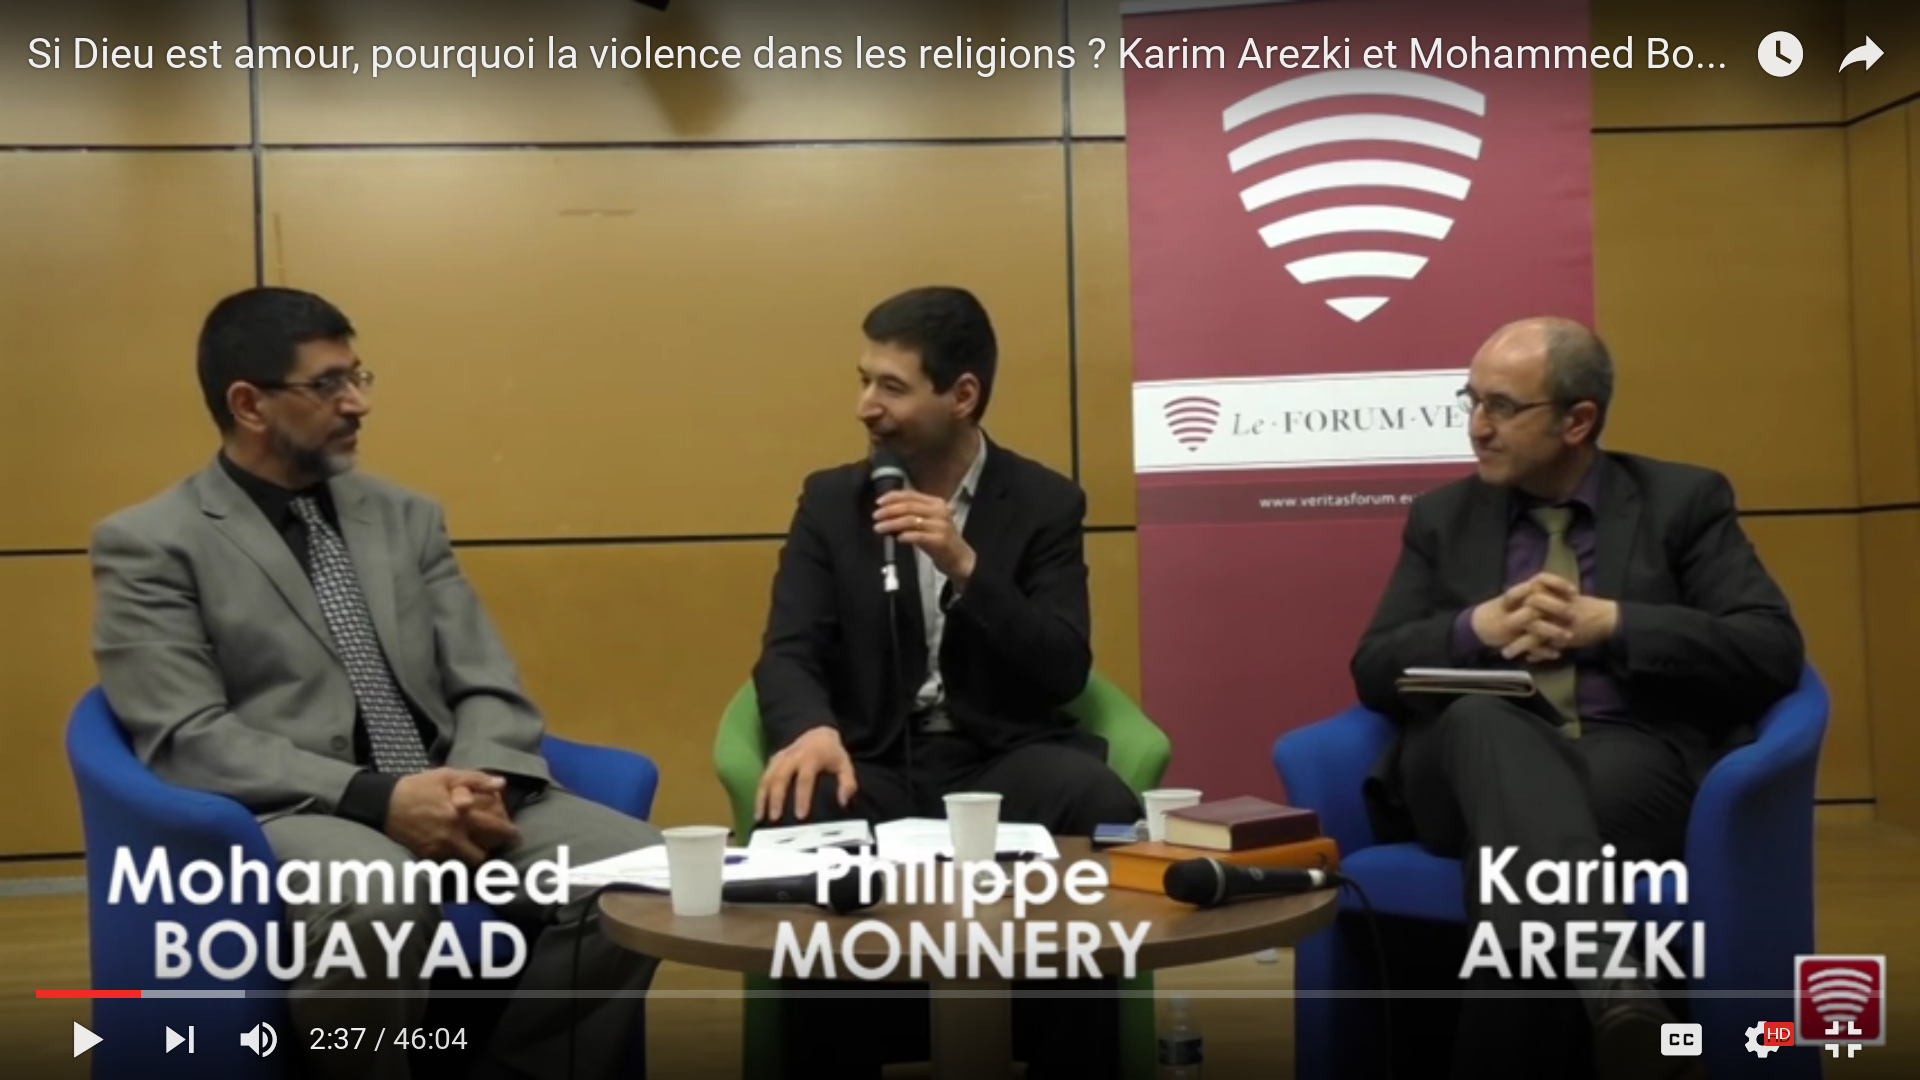 Si Dieu est amour, pourquoi la violence dans les religions ? Débat entre Karim Arezki et Mohammed Bouayad